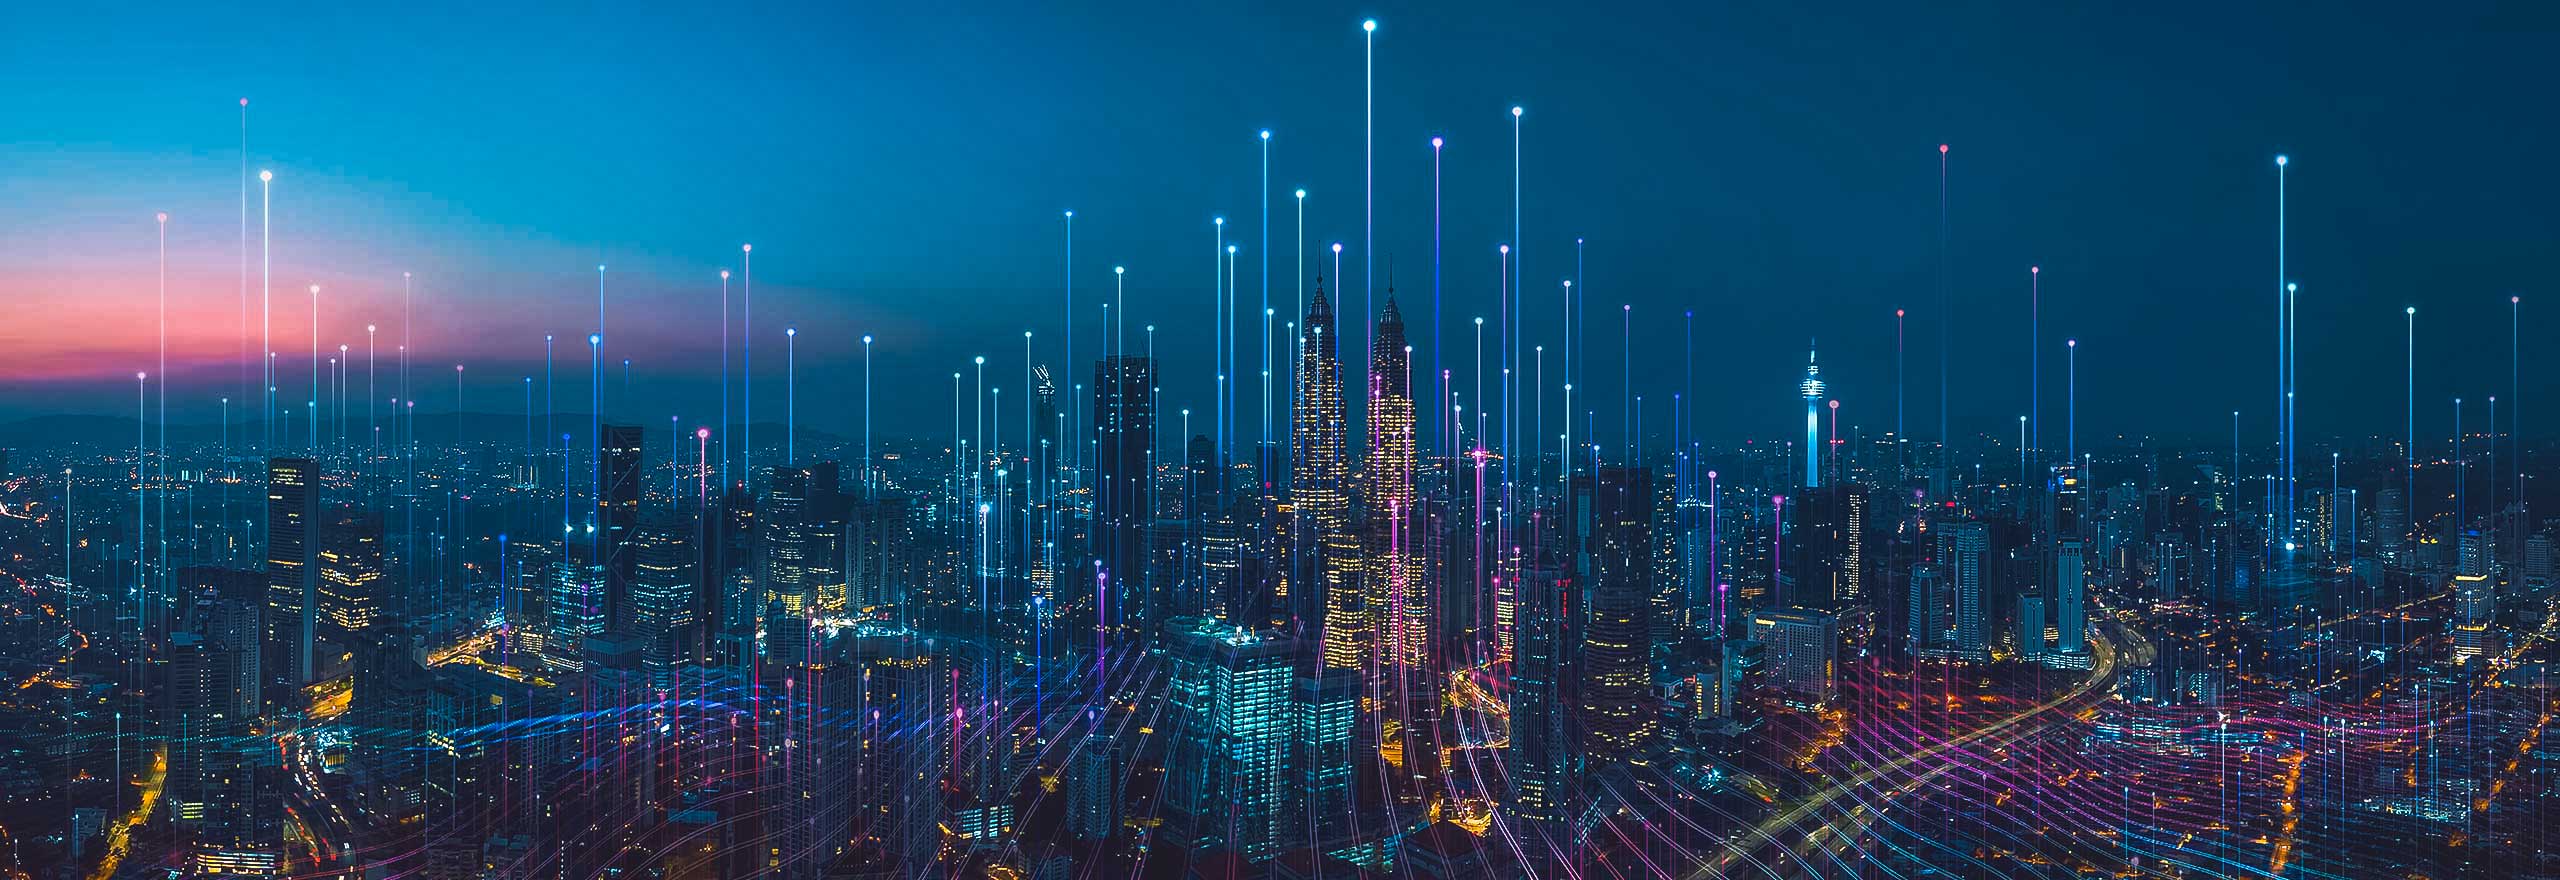 Eine Stadtlandschaft bei Nacht mit überlagerten digitalen Elementen, die Datenpunkte darstellen